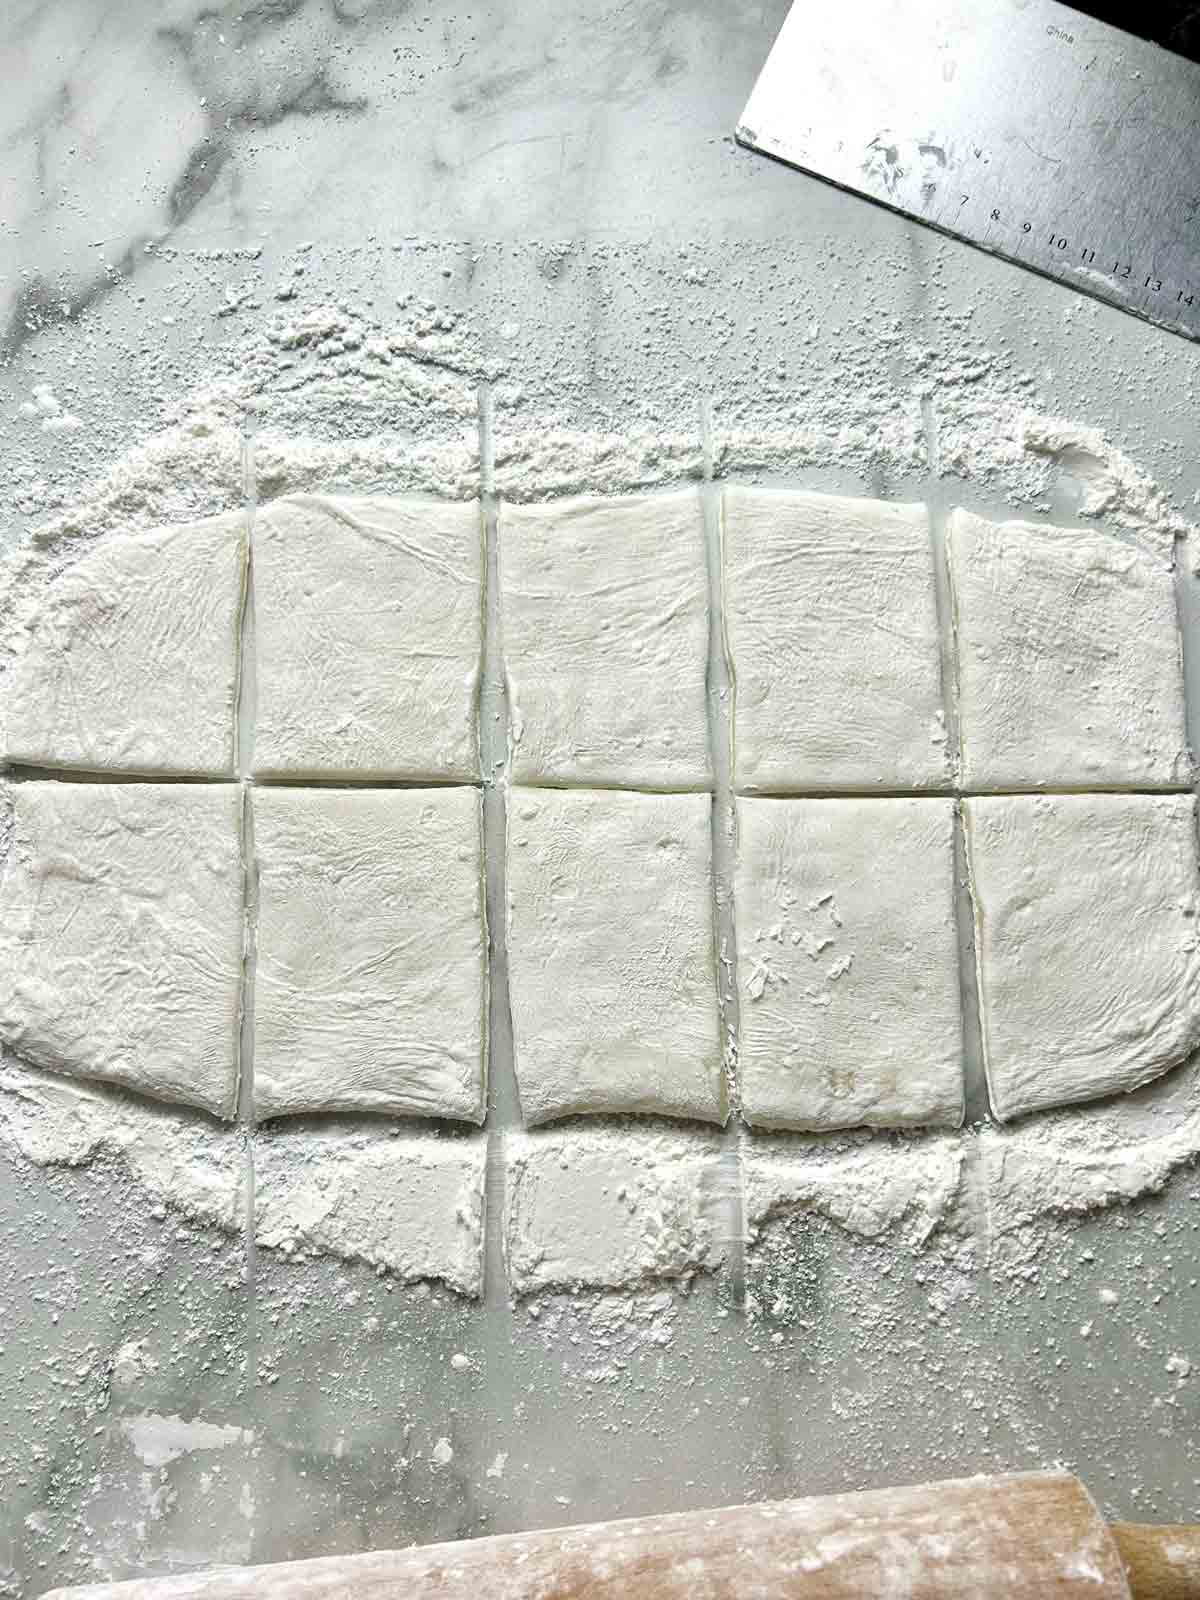 flattened mochi dough cut into ten sections